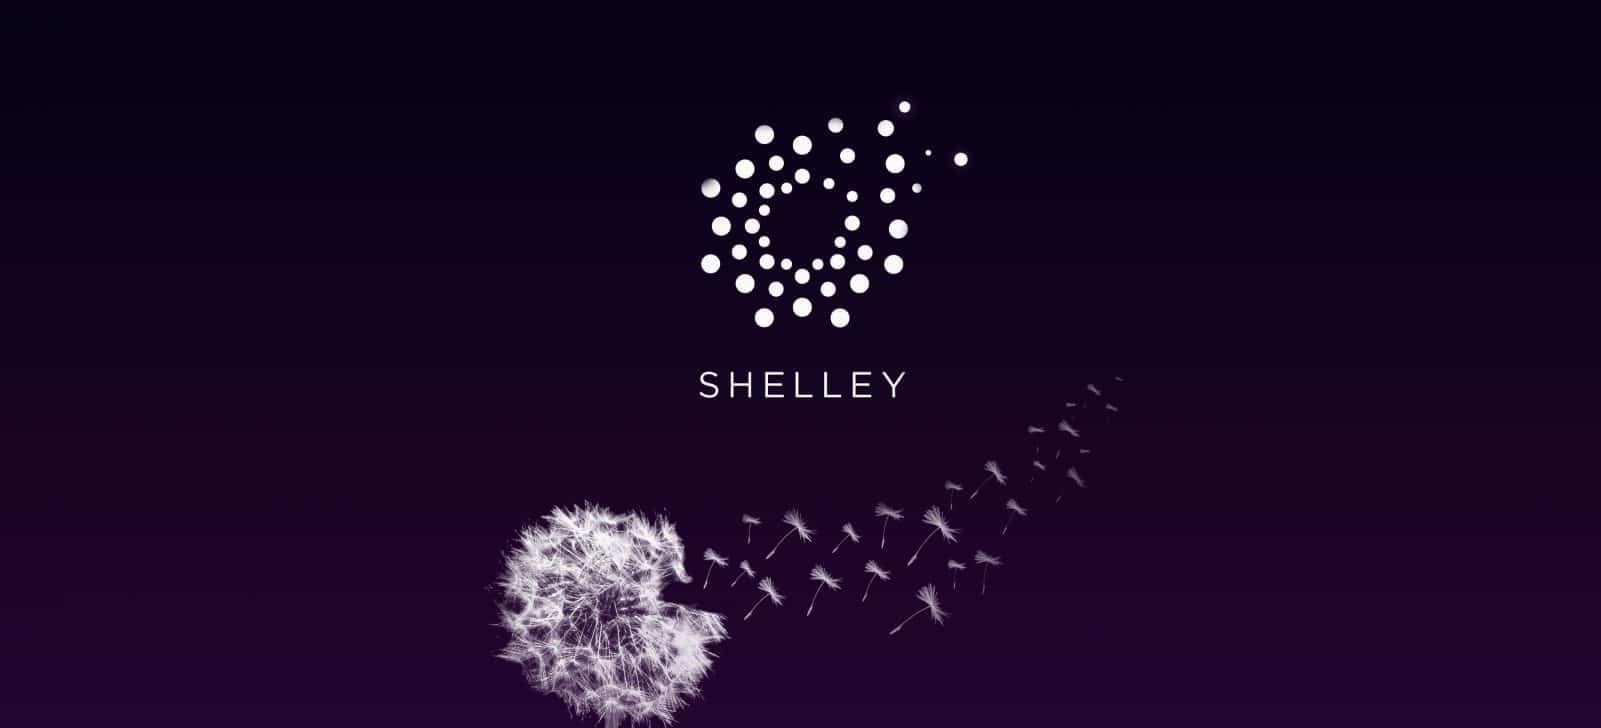 Shelley Phase Definition | CoinMarketCap